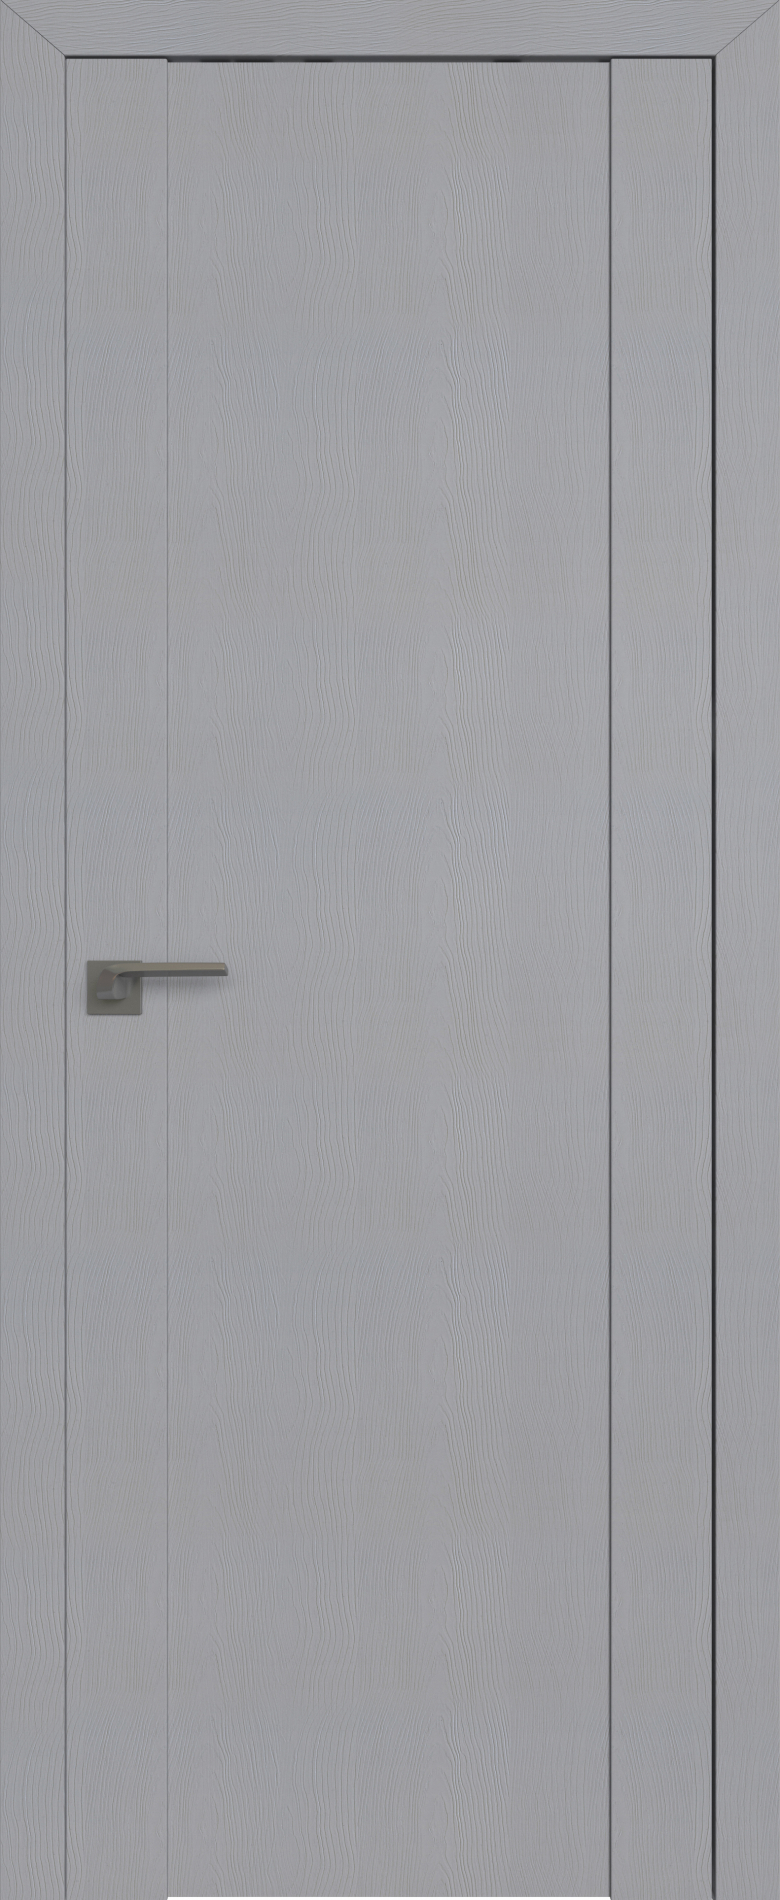 межкомнатные двери  Profil Doors 20STP Pine Manhattan grey